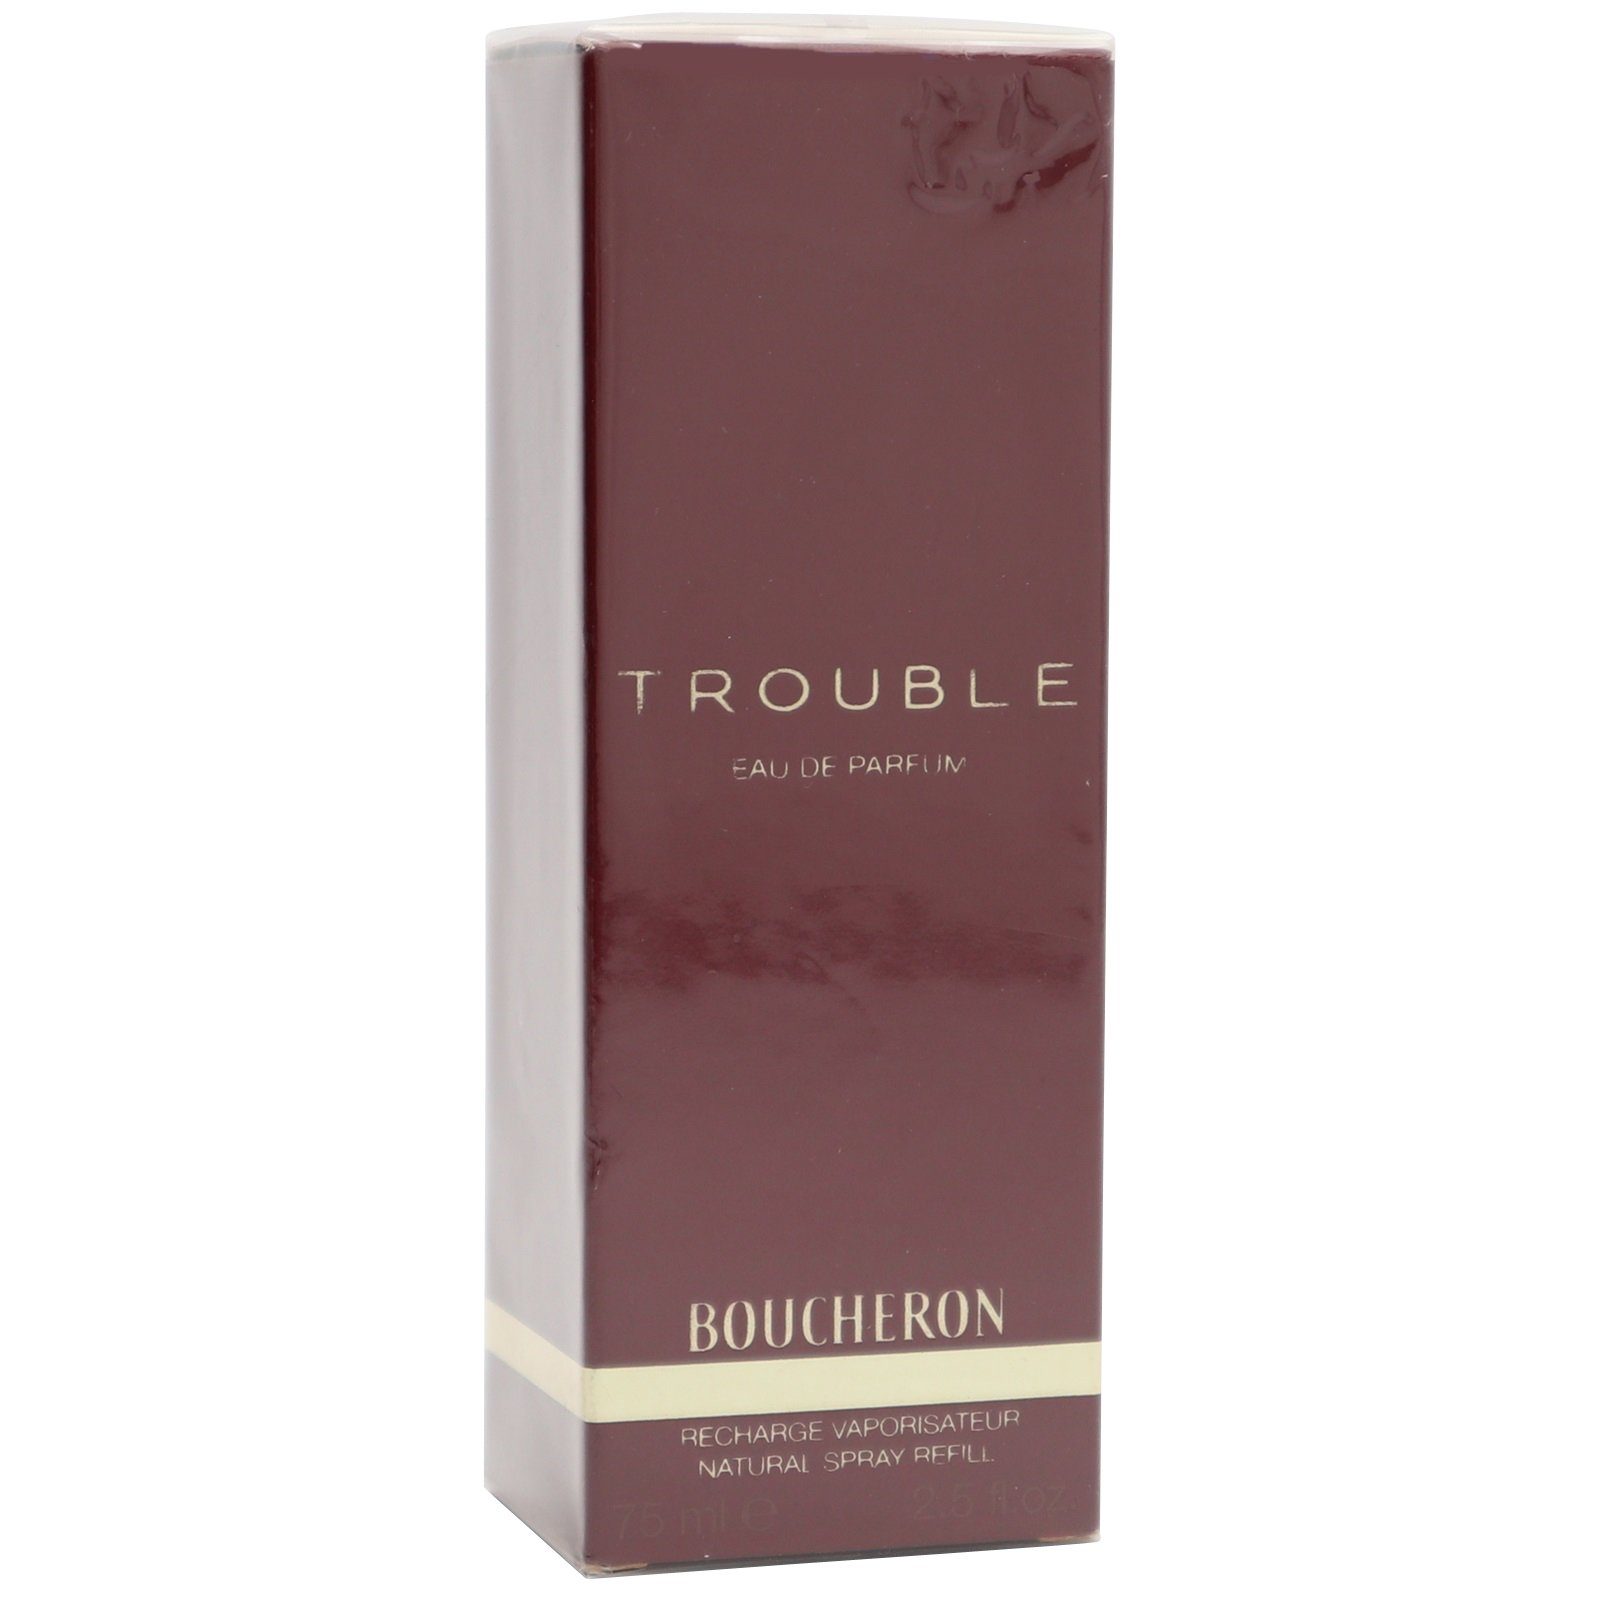 ml Boucheron de Spray de Eau Trouble 75 BOUCHERON recharge refill Eau / Parfum Parfum